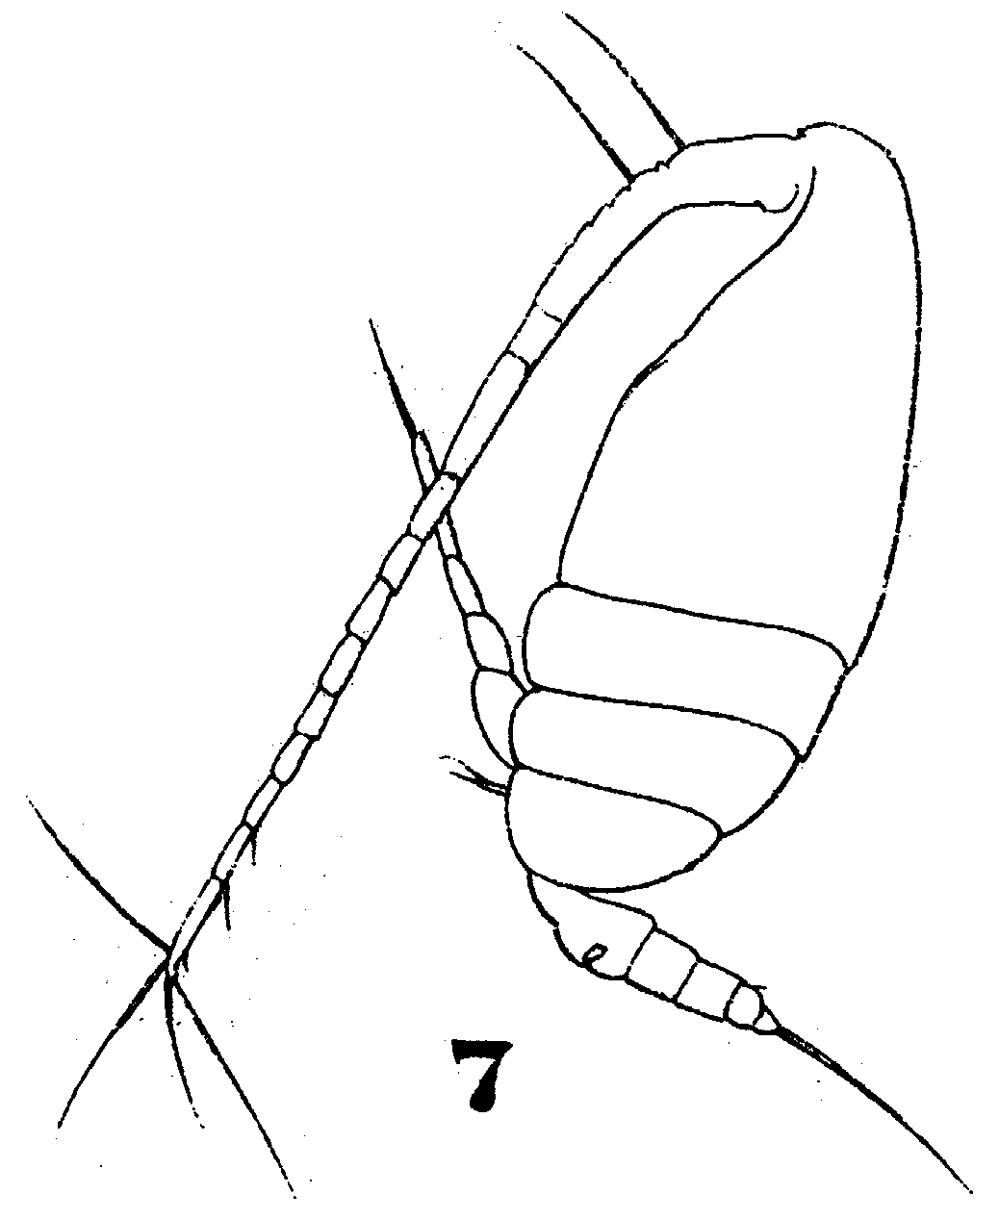 Espèce Scolecithricella abyssalis - Planche 7 de figures morphologiques